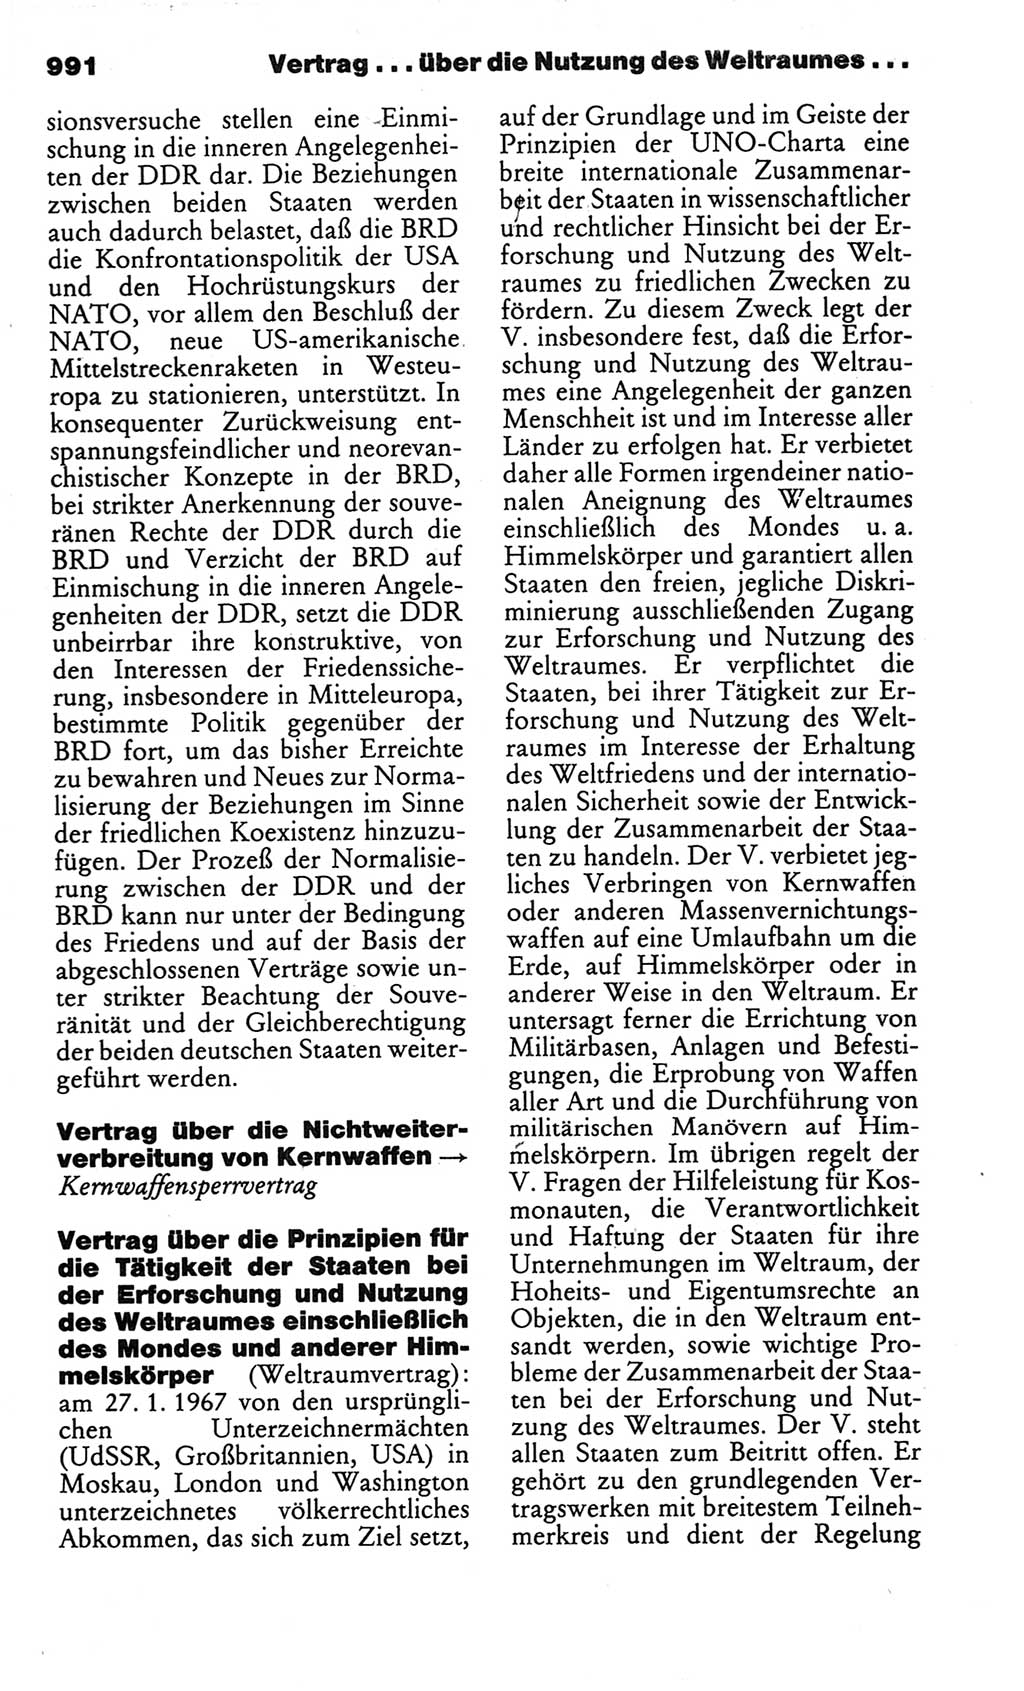 Kleines politisches Wörterbuch [Deutsche Demokratische Republik (DDR)] 1986, Seite 991 (Kl. pol. Wb. DDR 1986, S. 991)